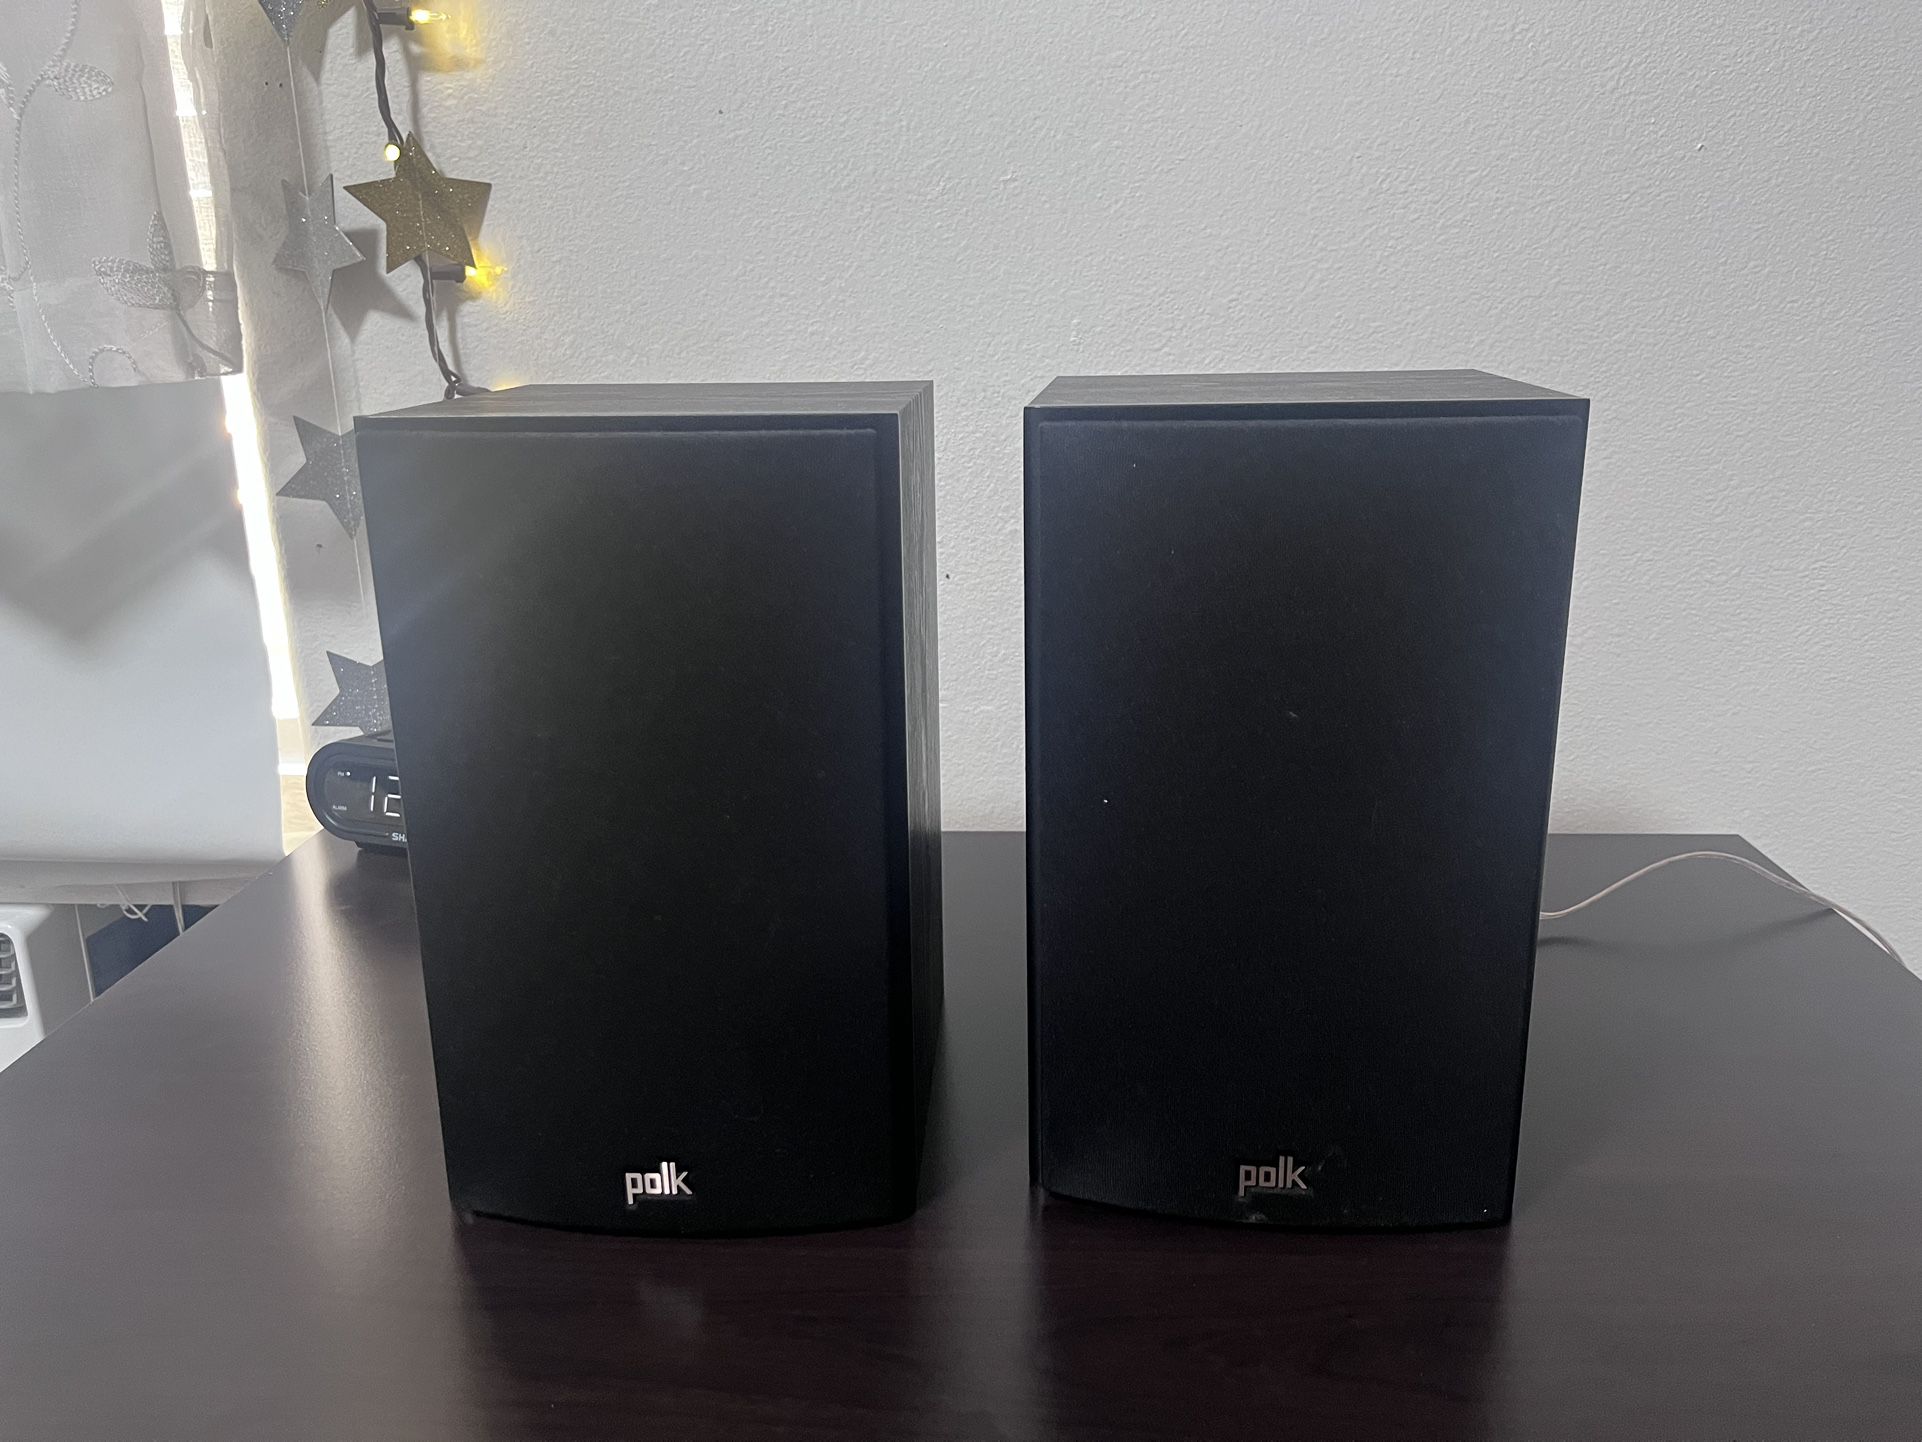 Polk speakers